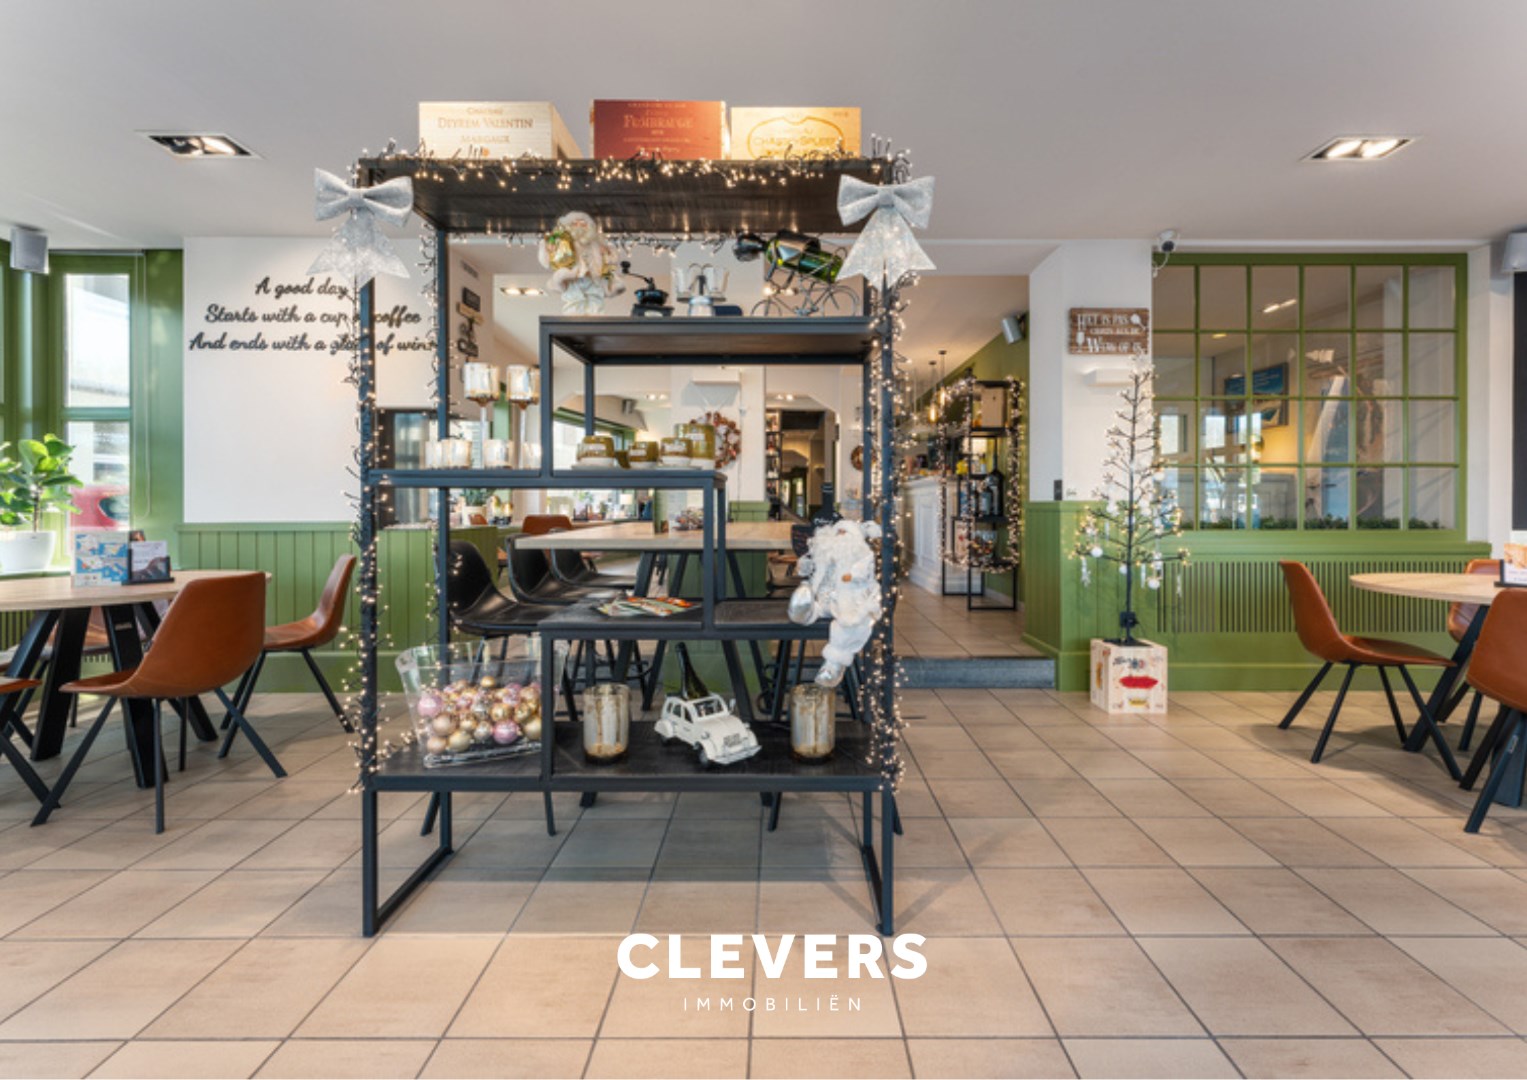 Clevers Immobiliën - Brugge